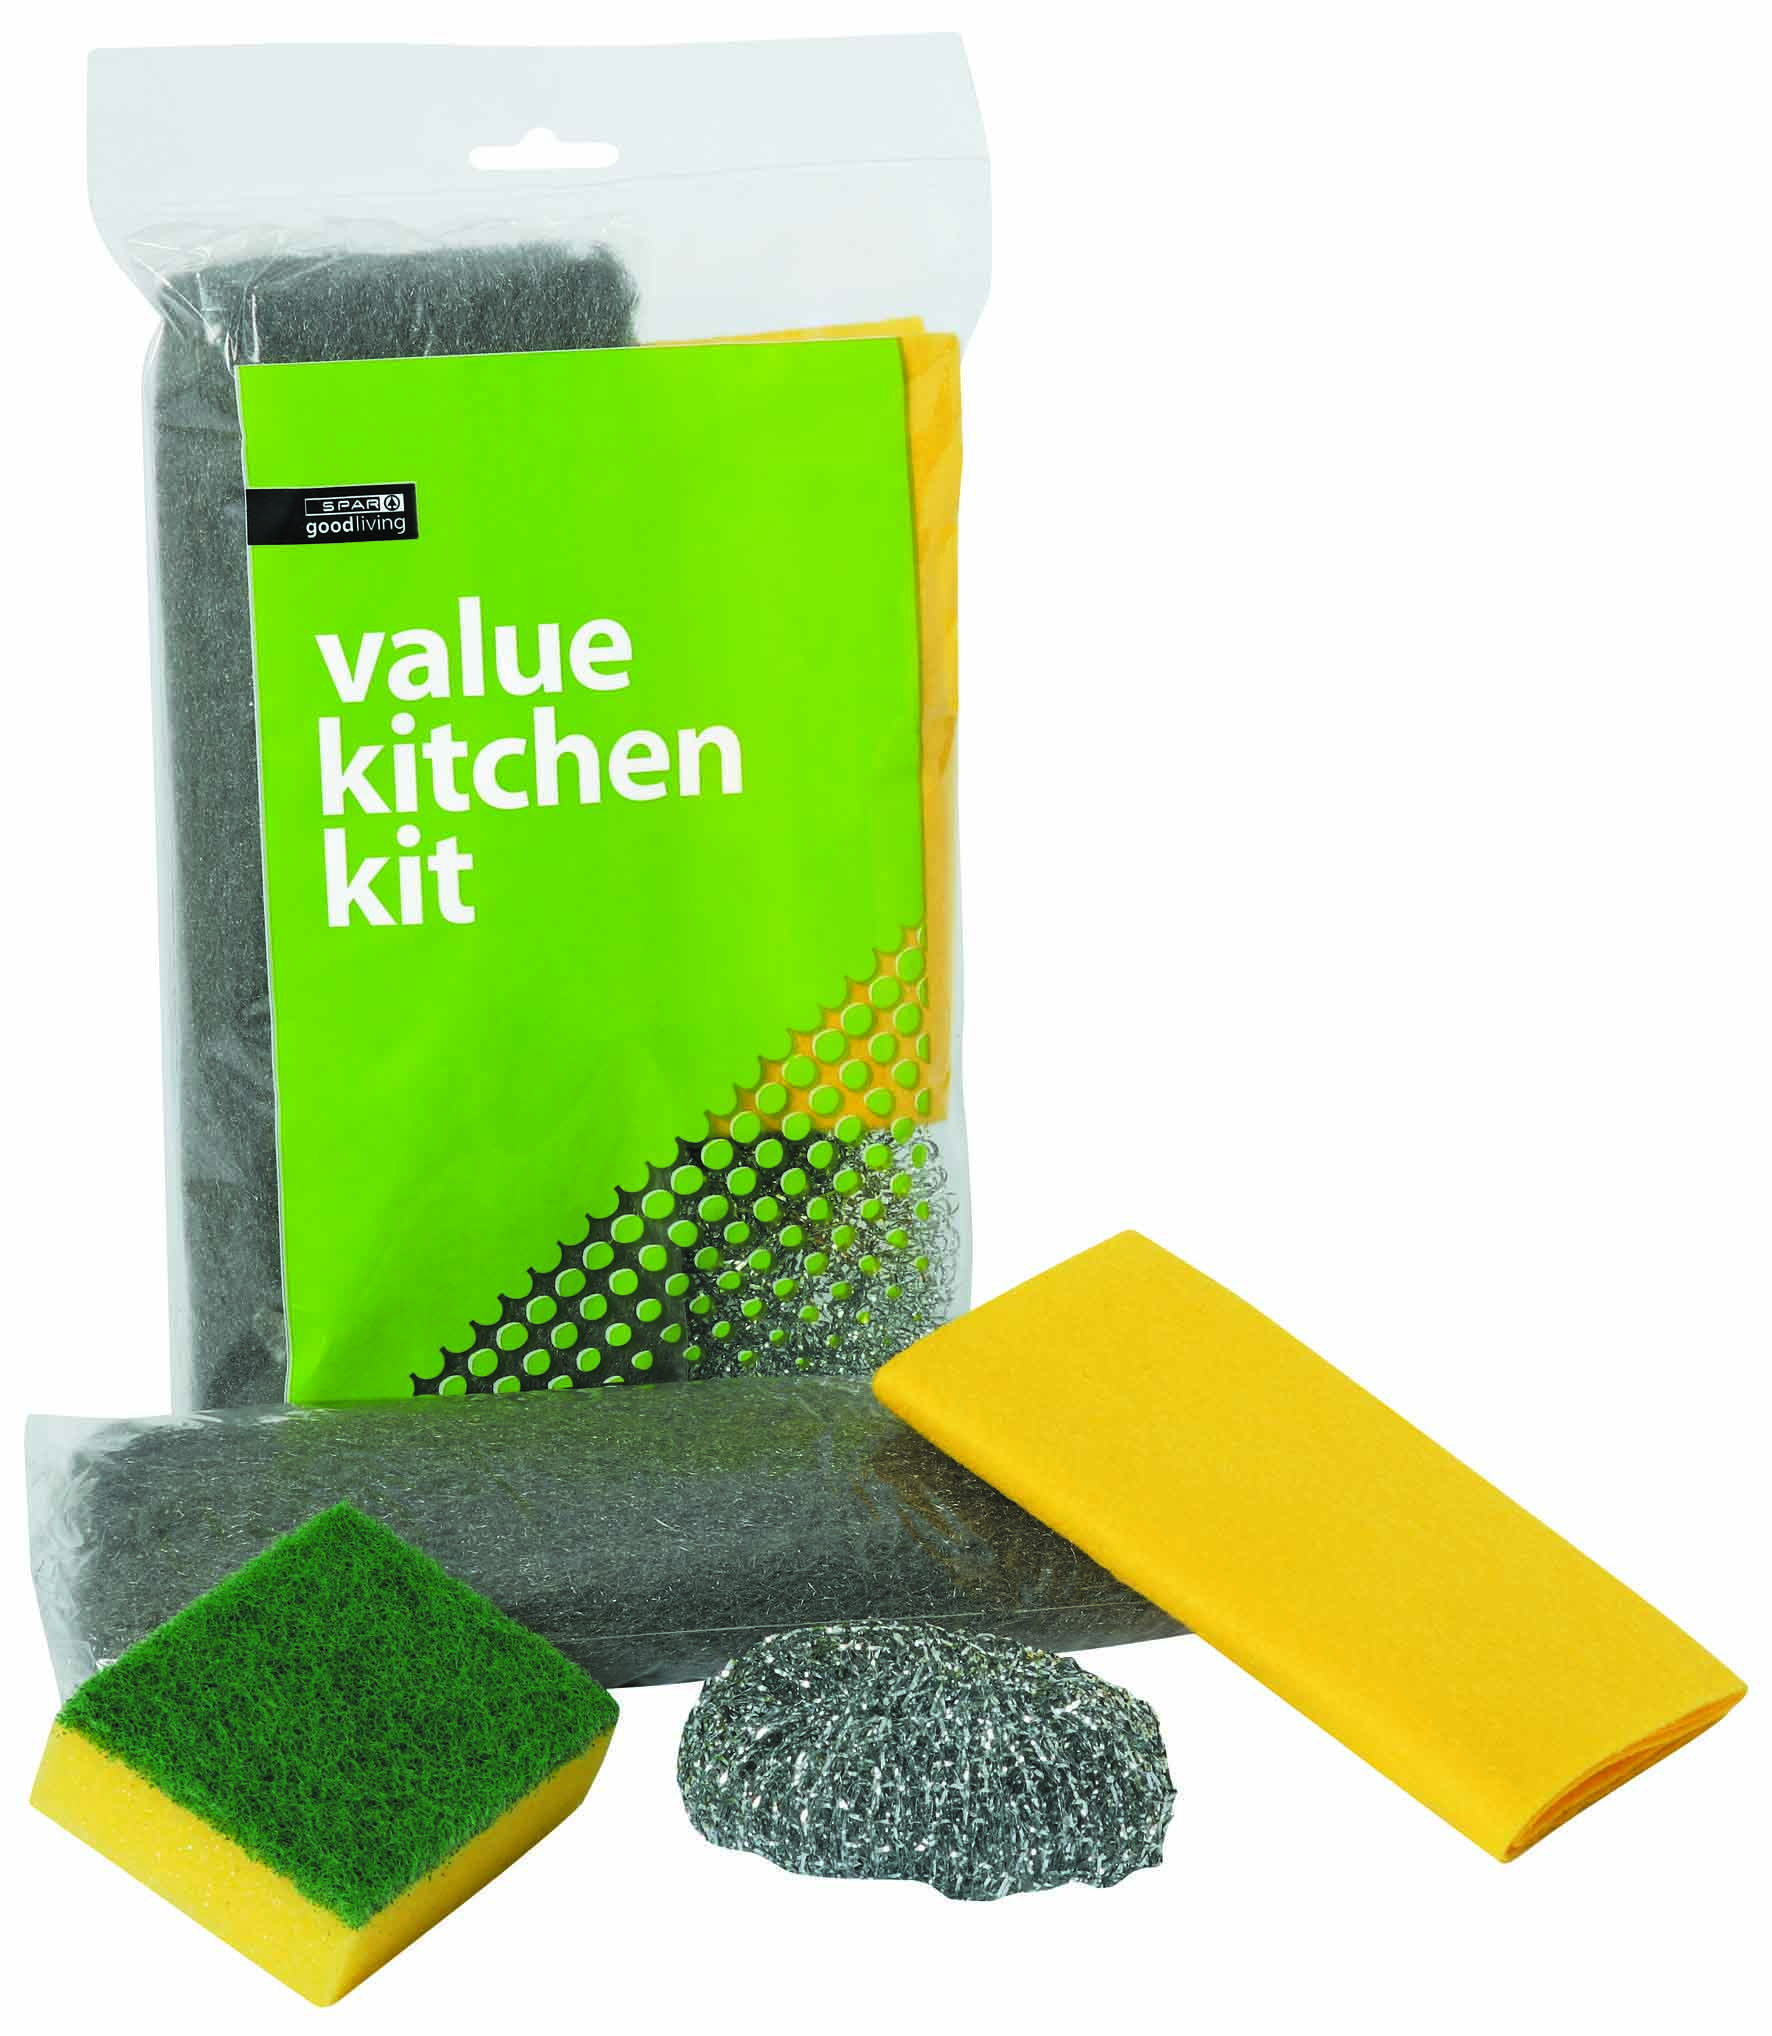 kitchen kit - value